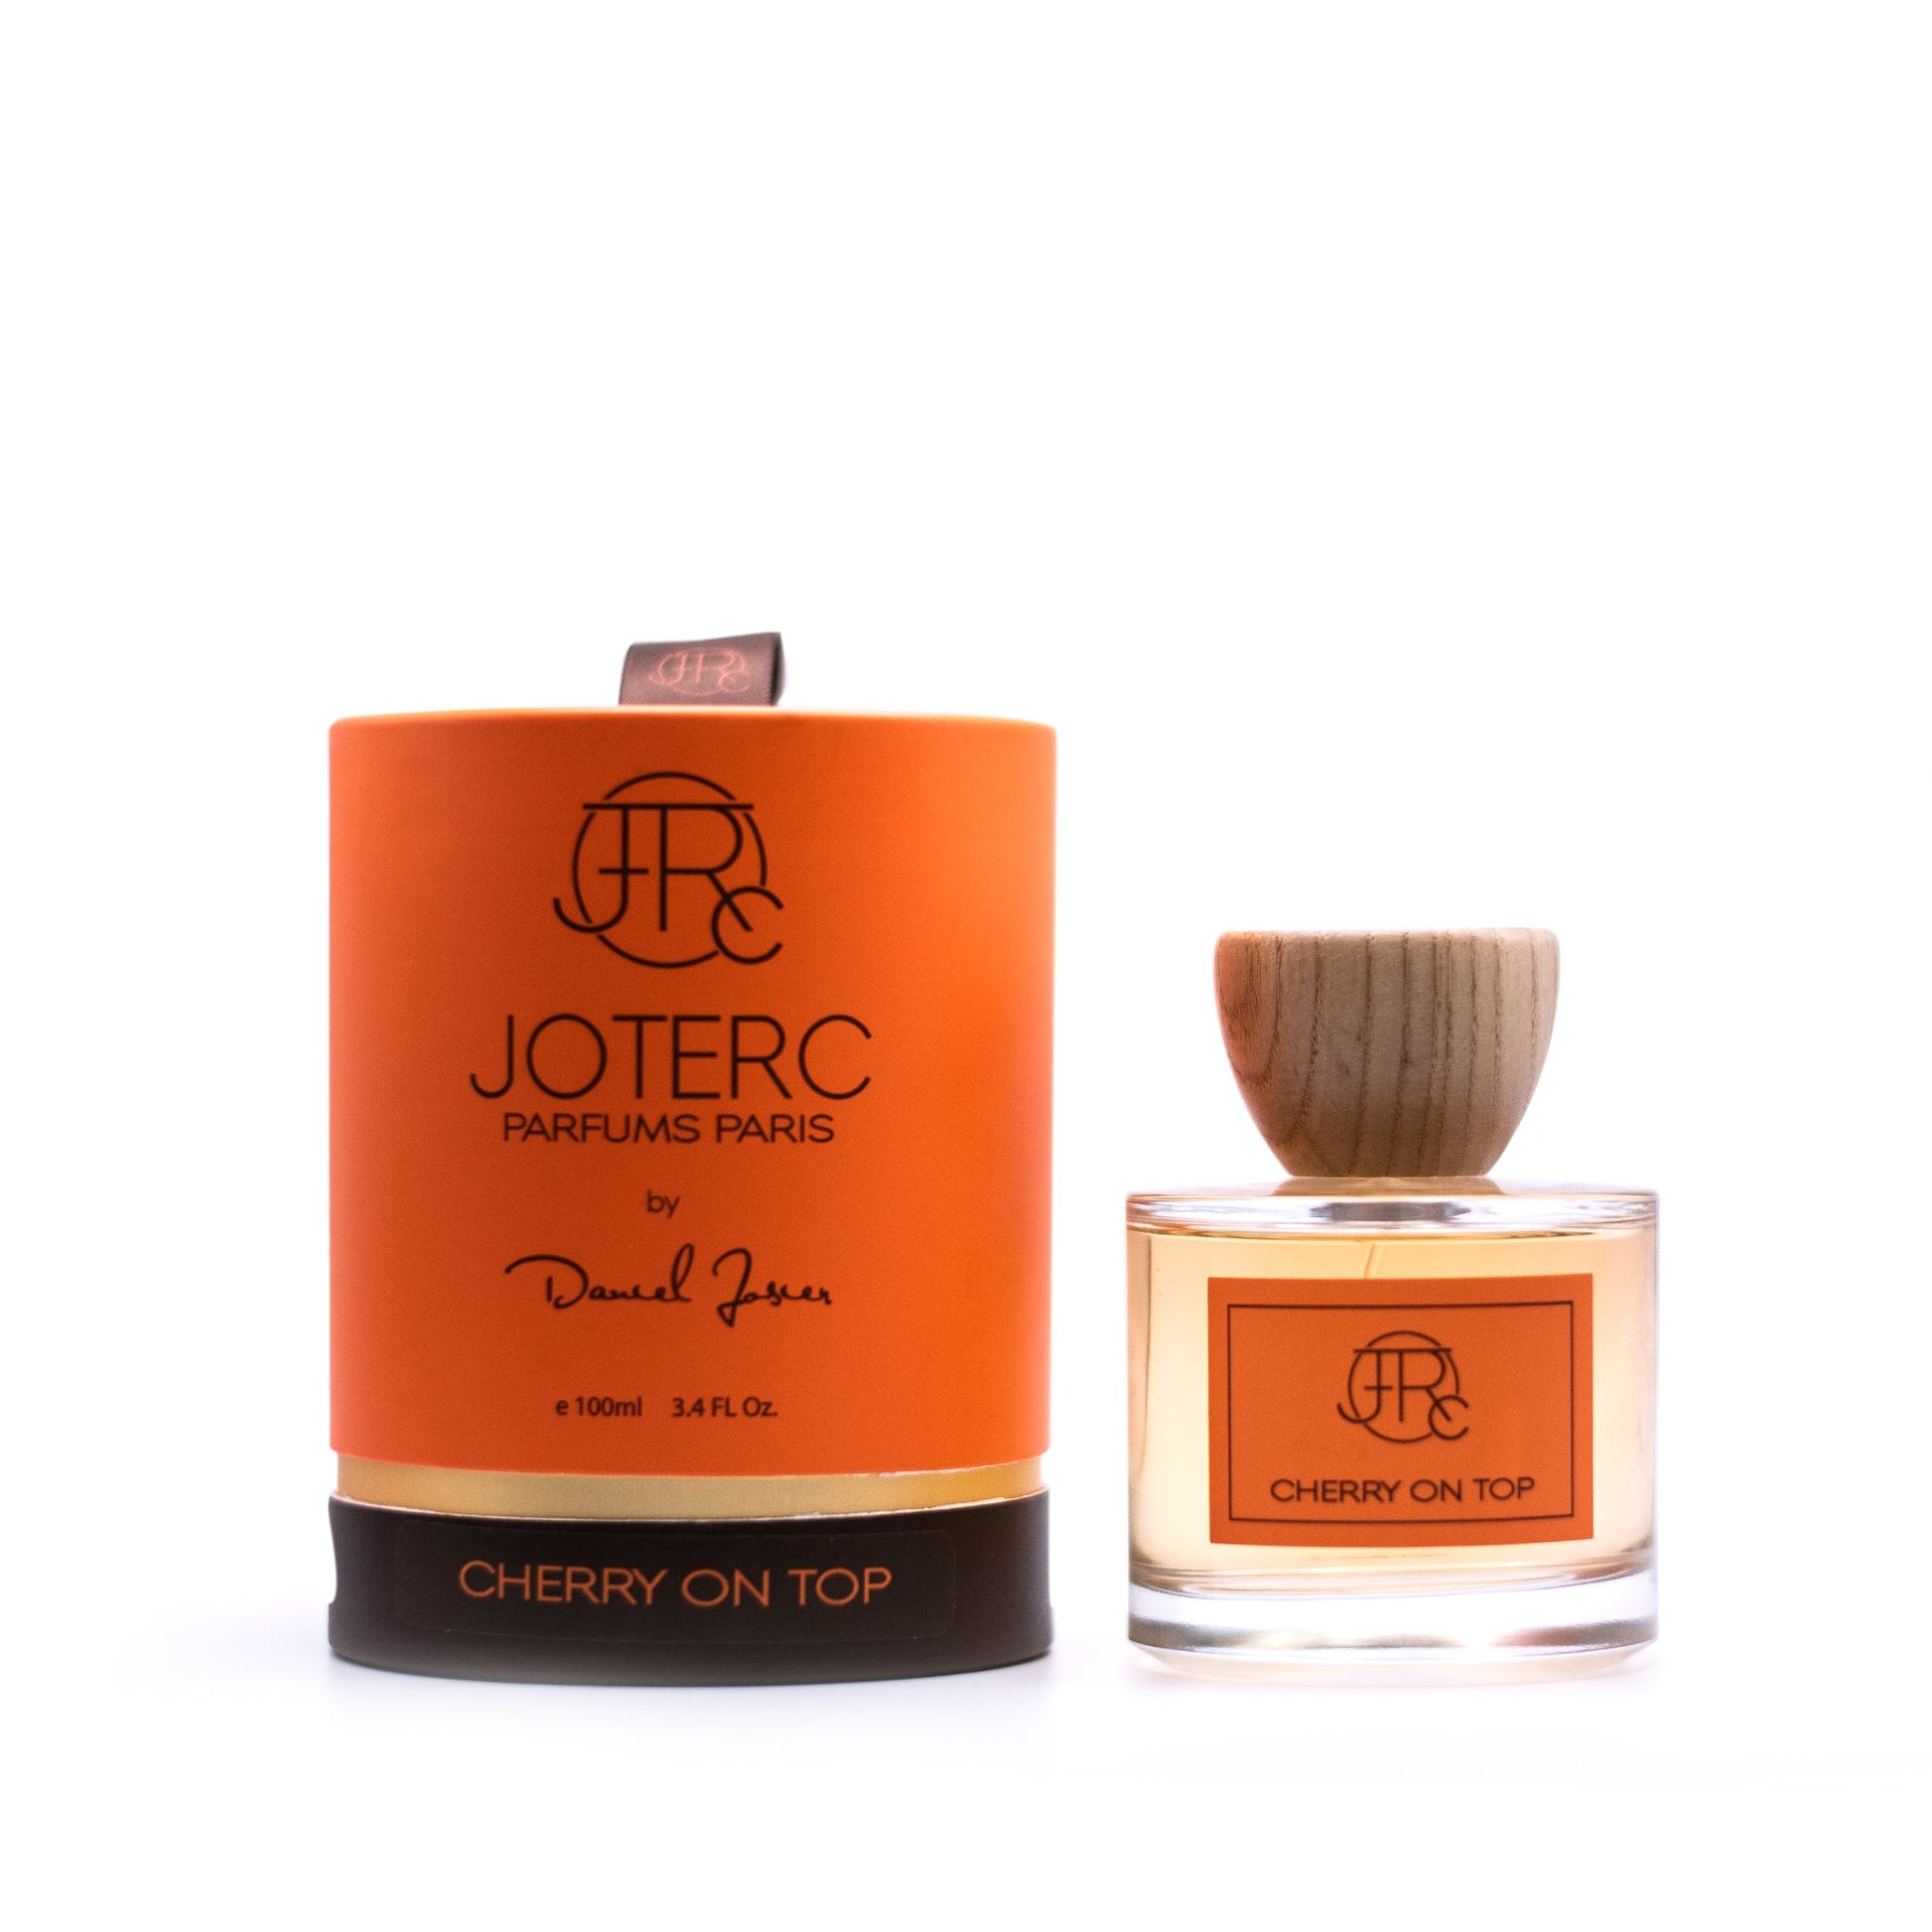 Joterc Cherry On Top Eau de Parfum Spray by Daniel Josier, Product image 1